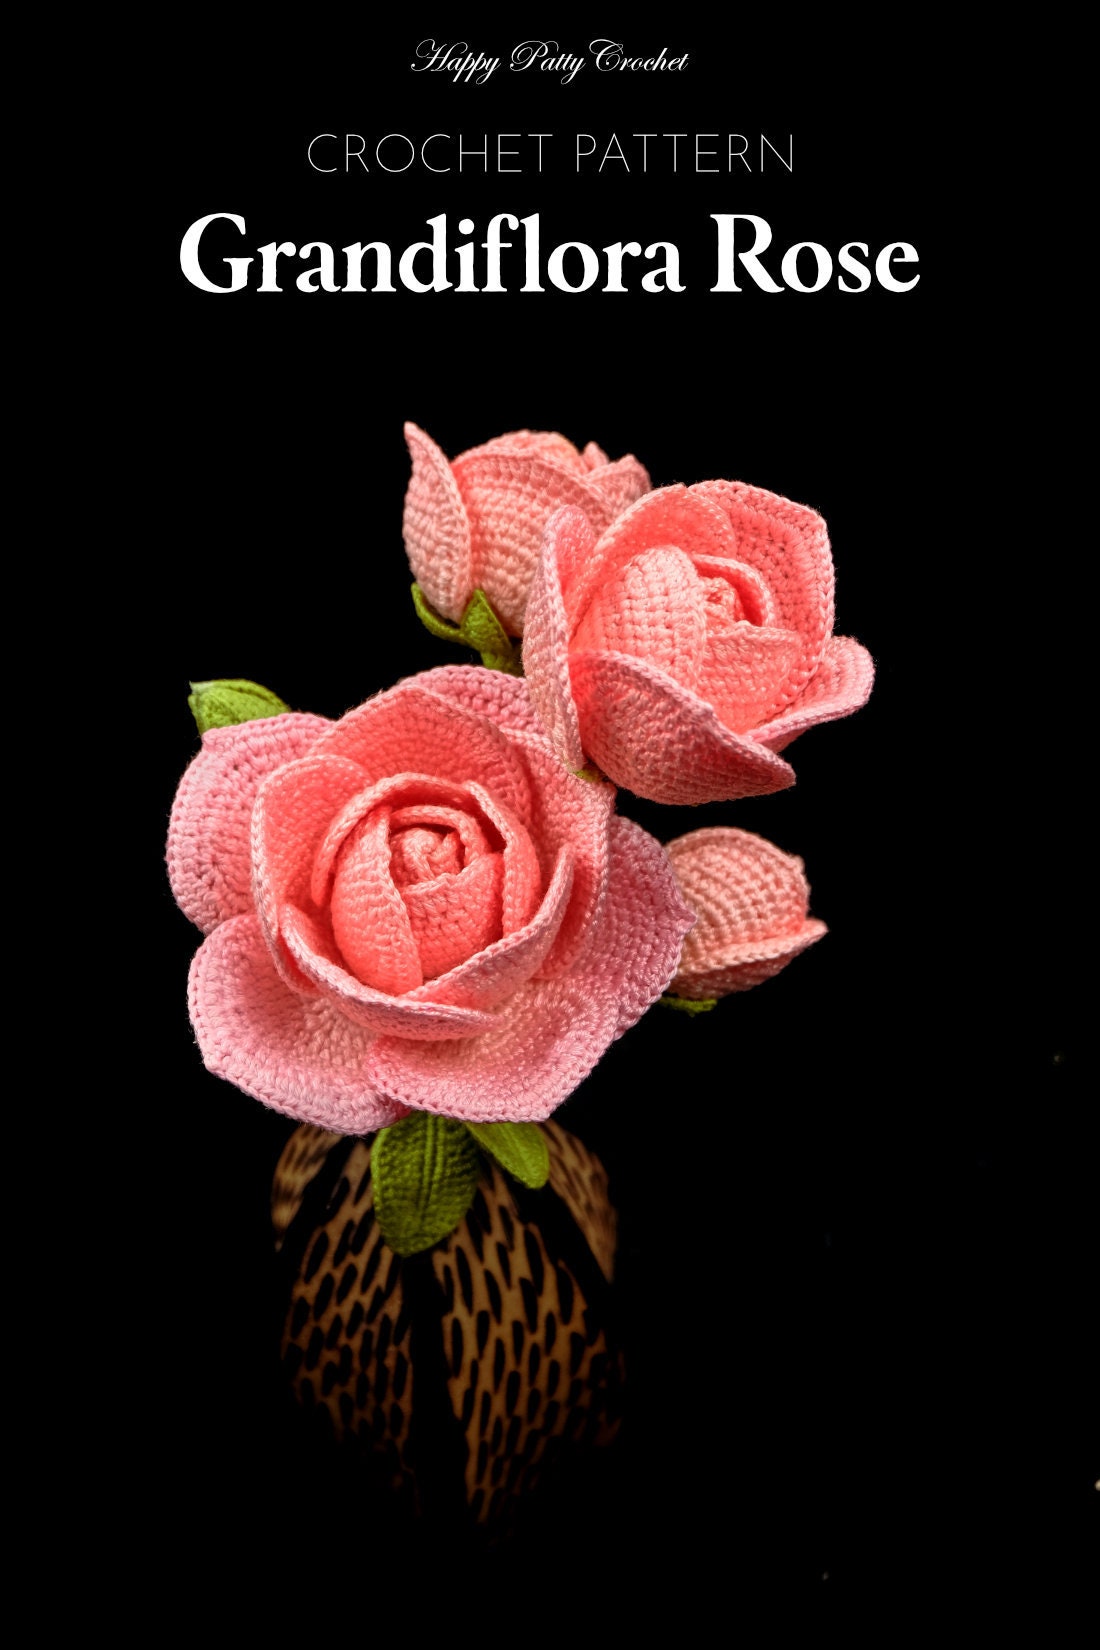 Crochet Pattern for Grandiflora Roses - Crochet Flower Pattern for Rose flowers - Crochet Rose Pattern